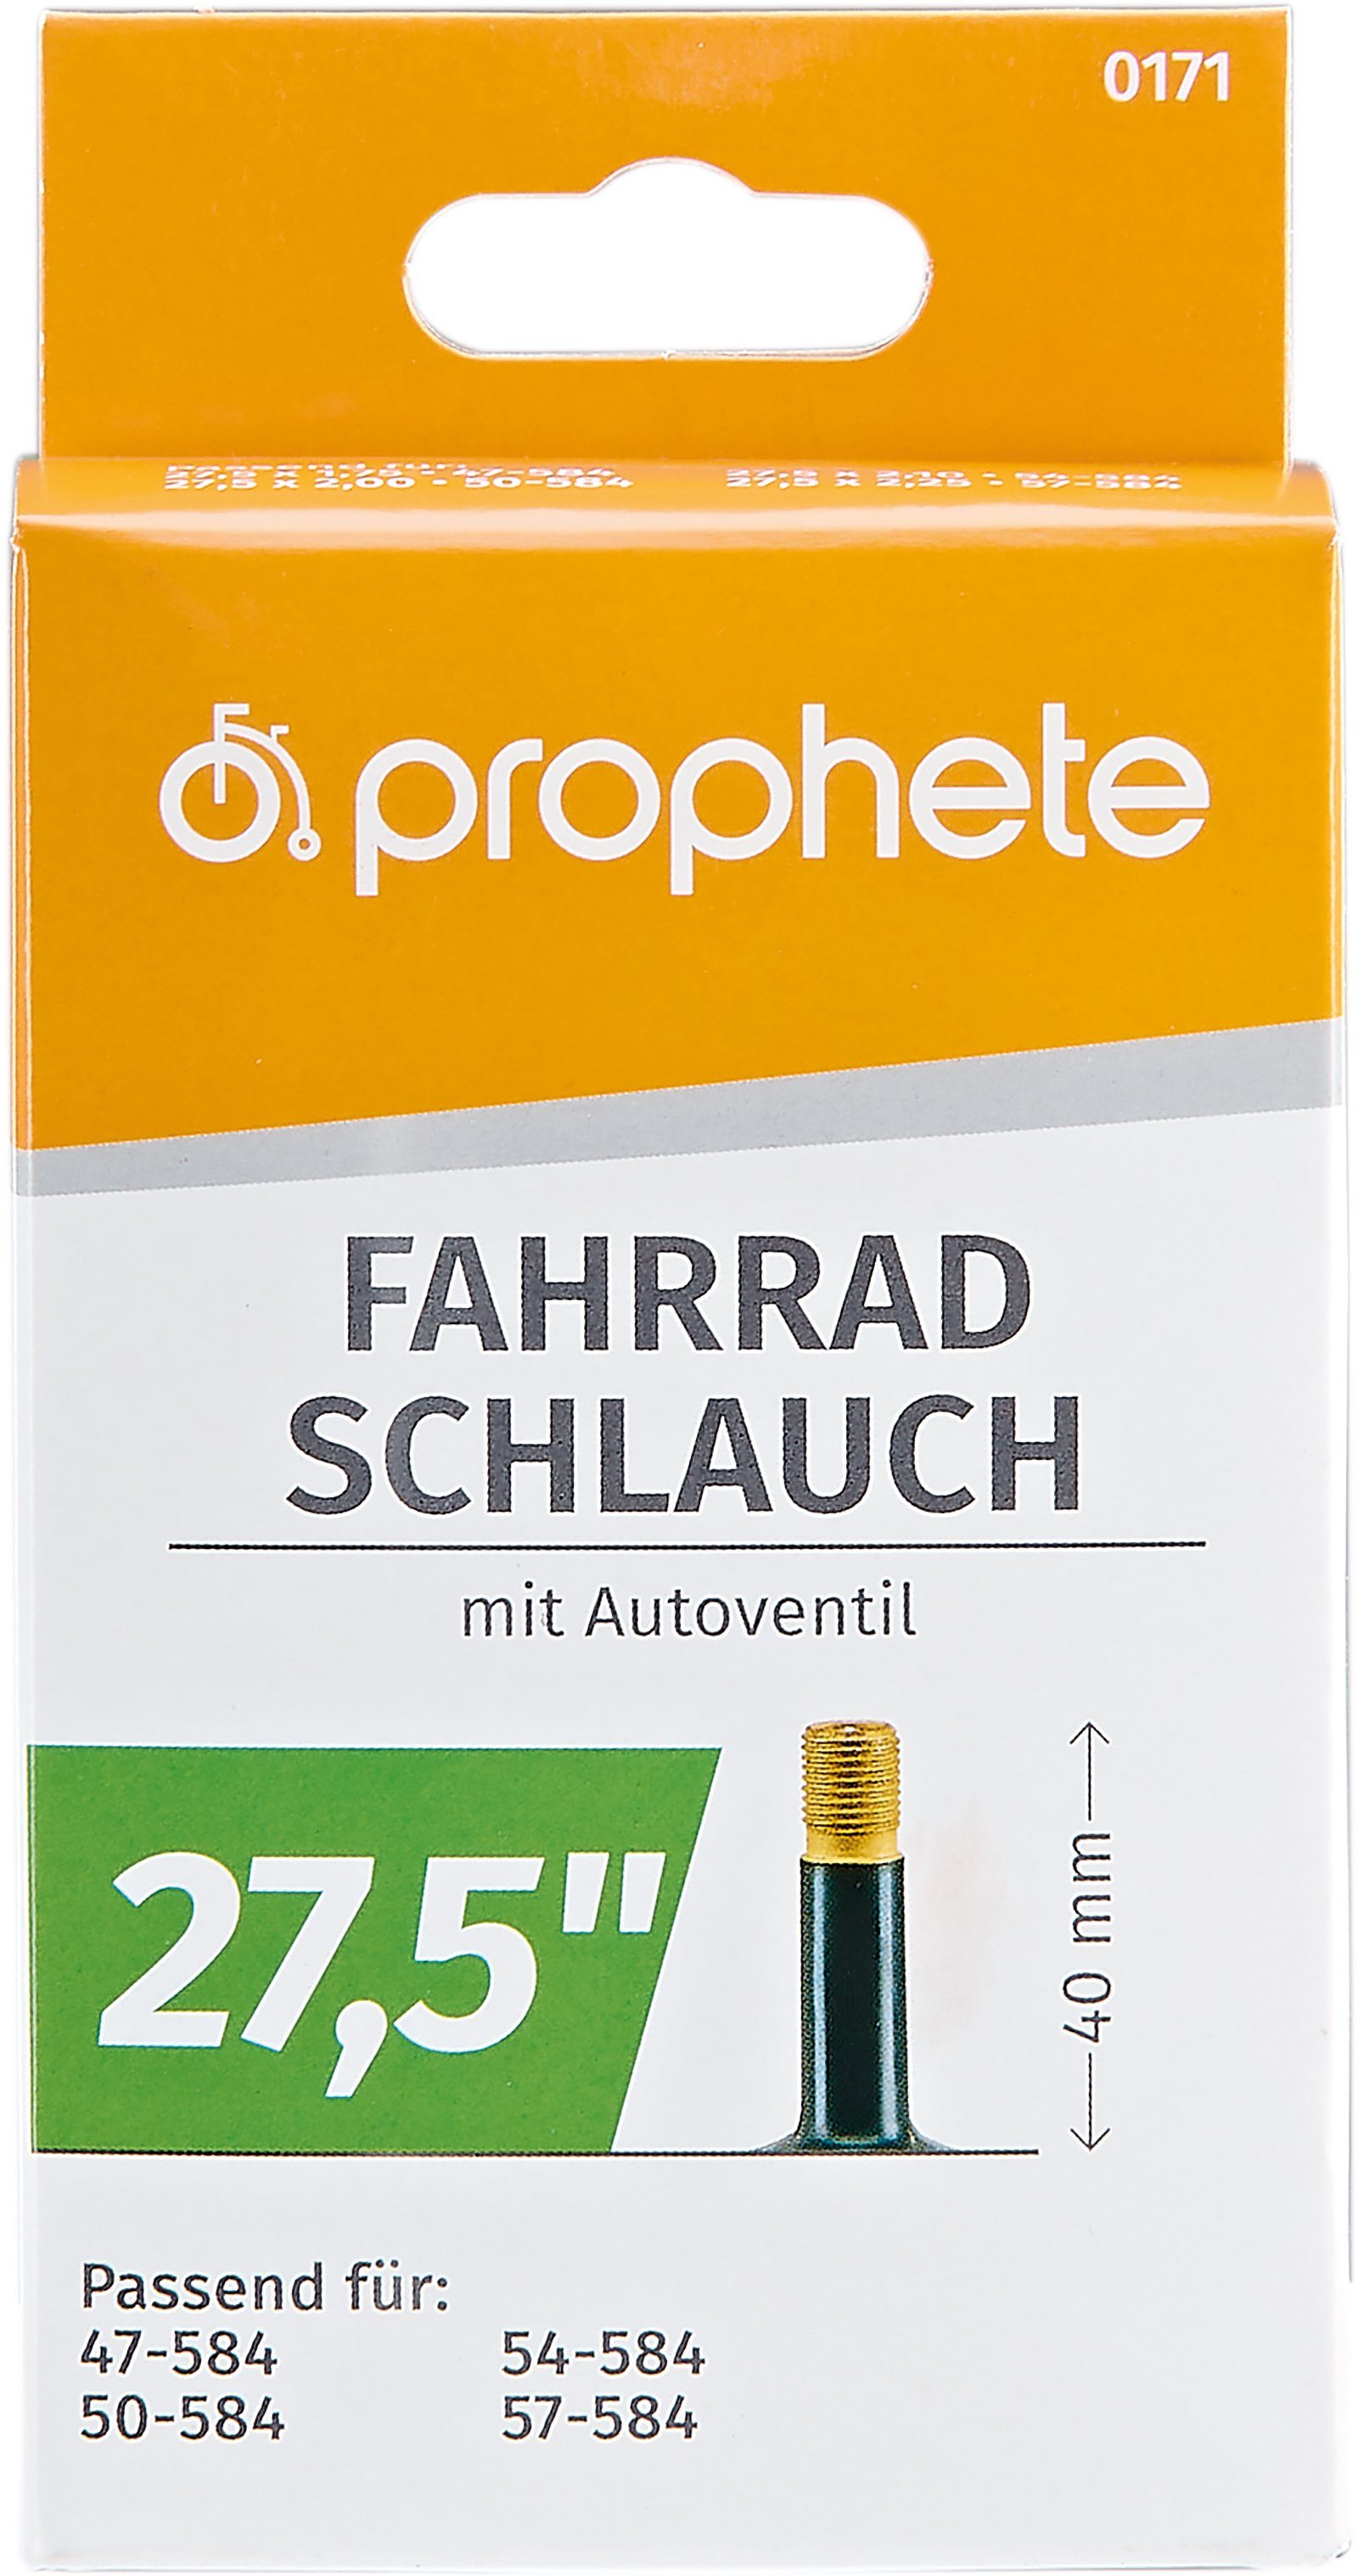 Rabattaktion Prophete Fahrradschlauch Fahrradschlauch, 27,5 Zoll cm) (69,85